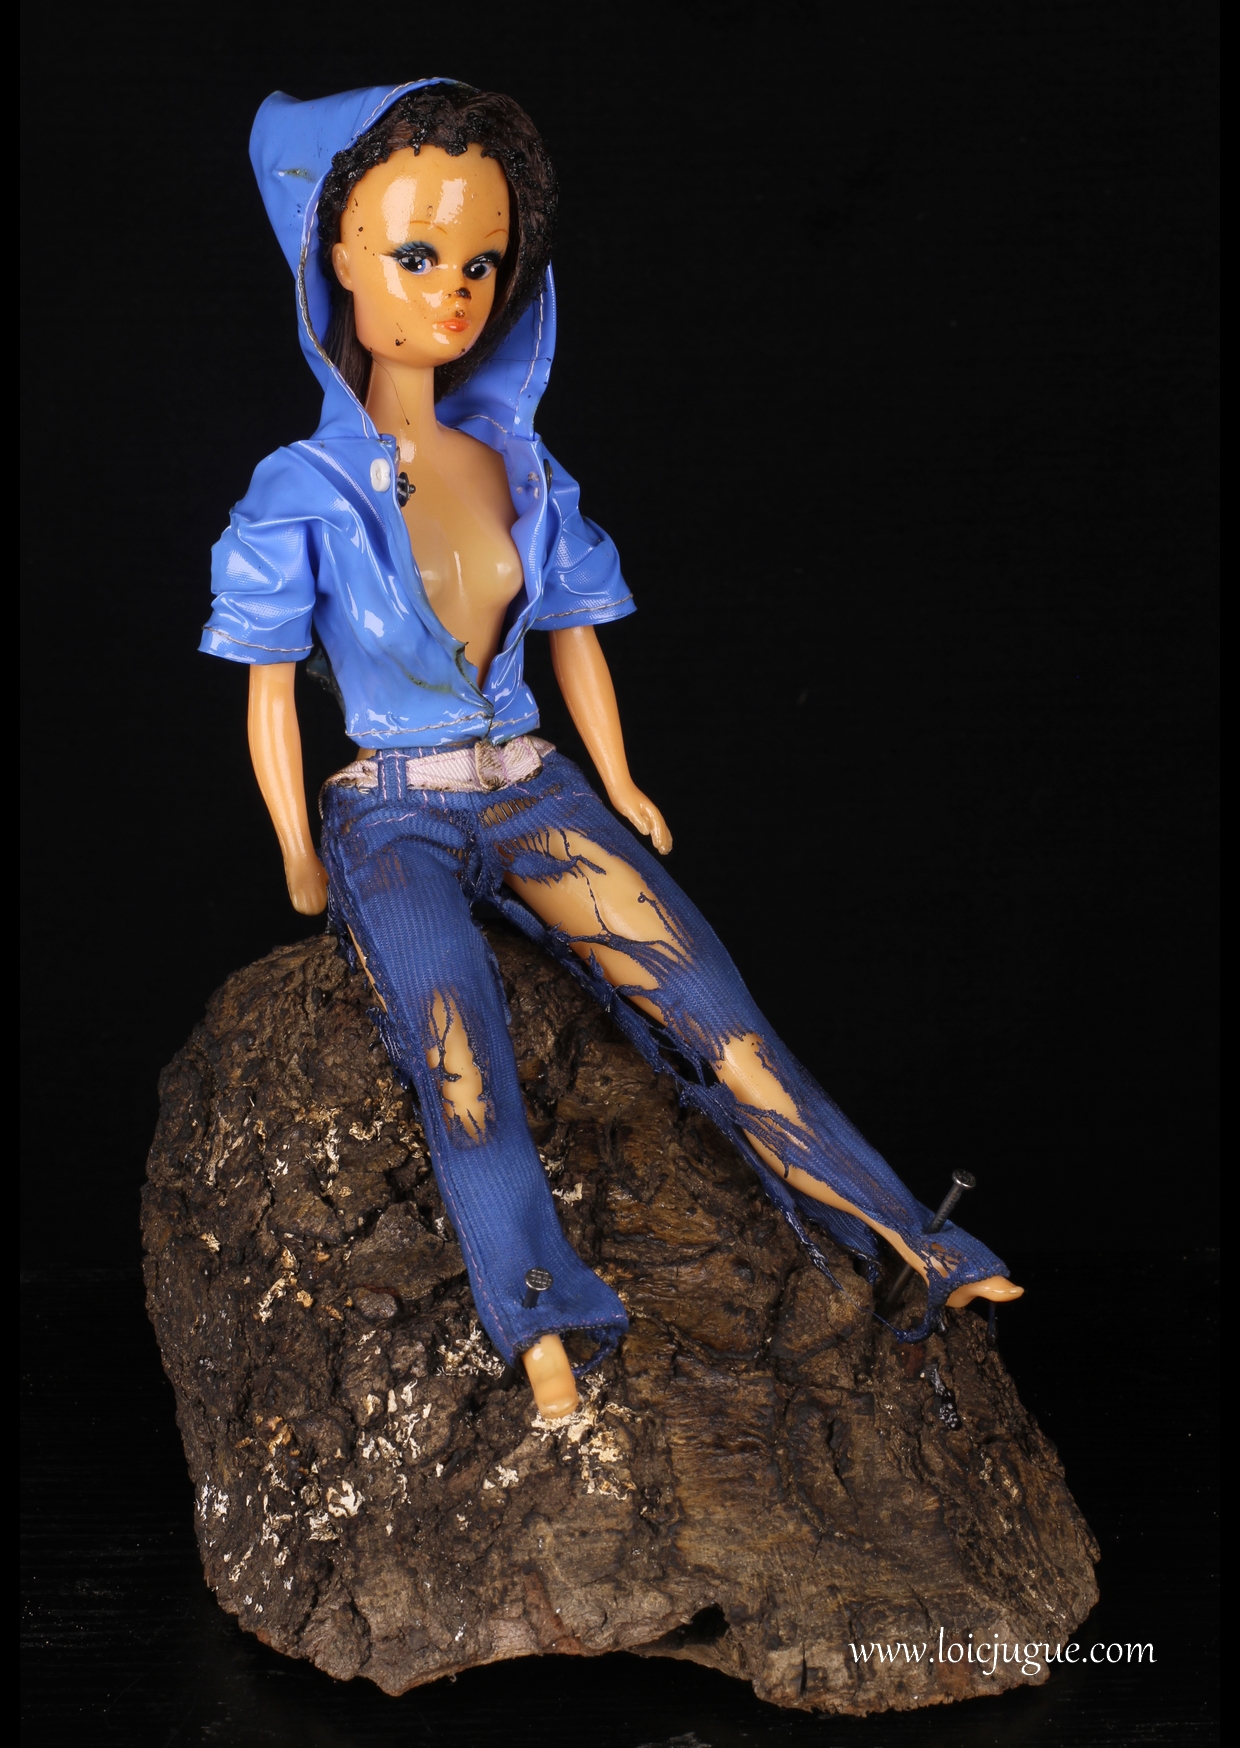 Les broken toys de Loïc Jugue: Blue doll